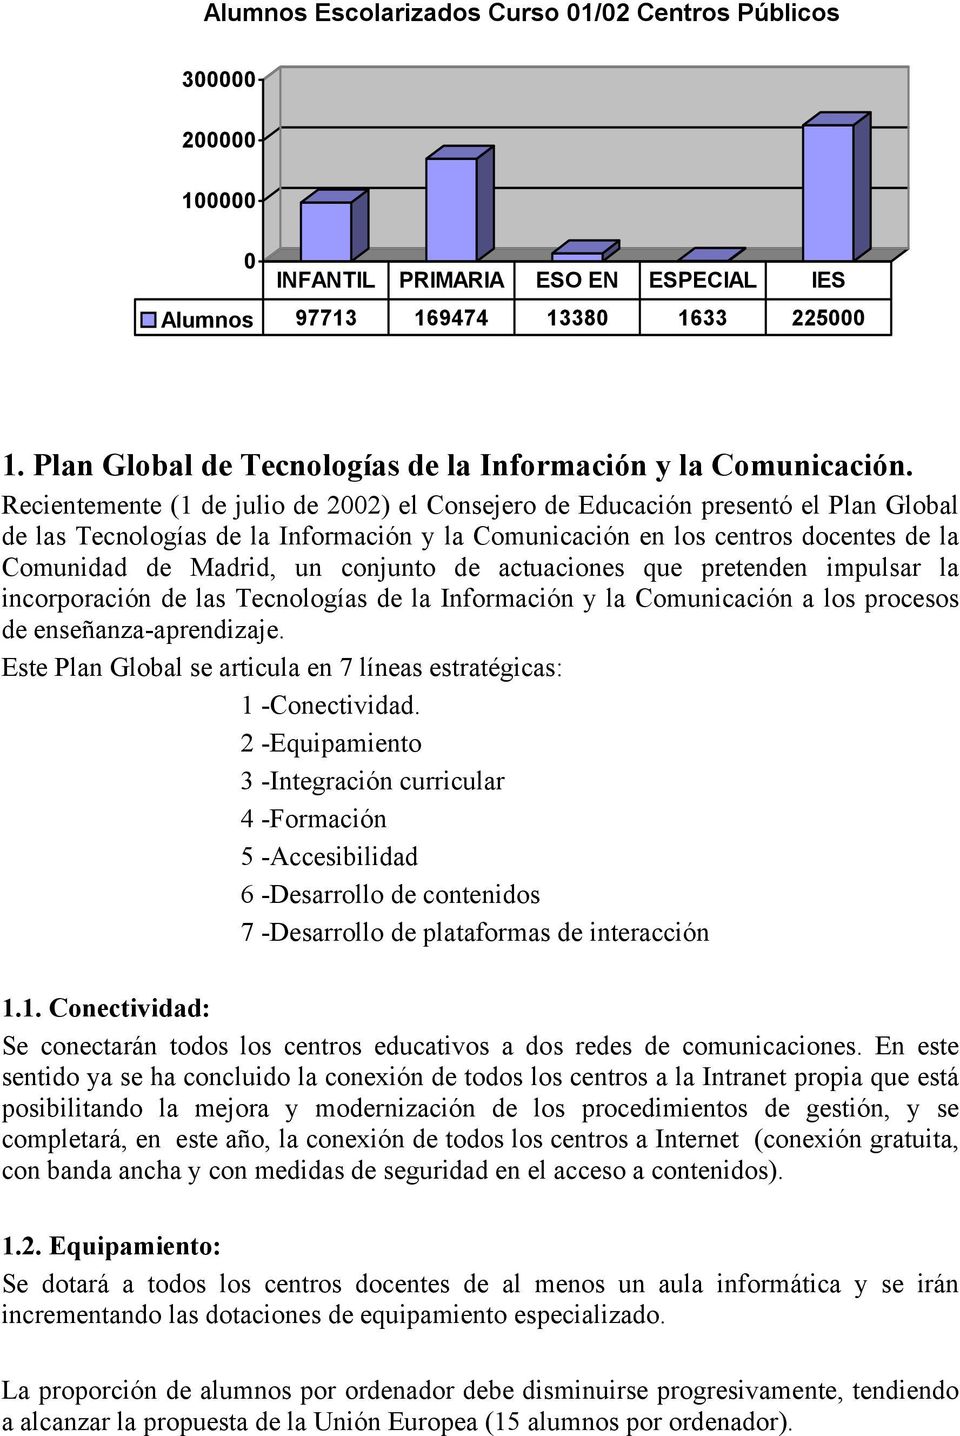 Recientemente (1 de julio de 2002) el Consejero de Educación presentó el Plan Global de las Tecnologías de la Información y la Comunicación en los centros docentes de la Comunidad de Madrid, un